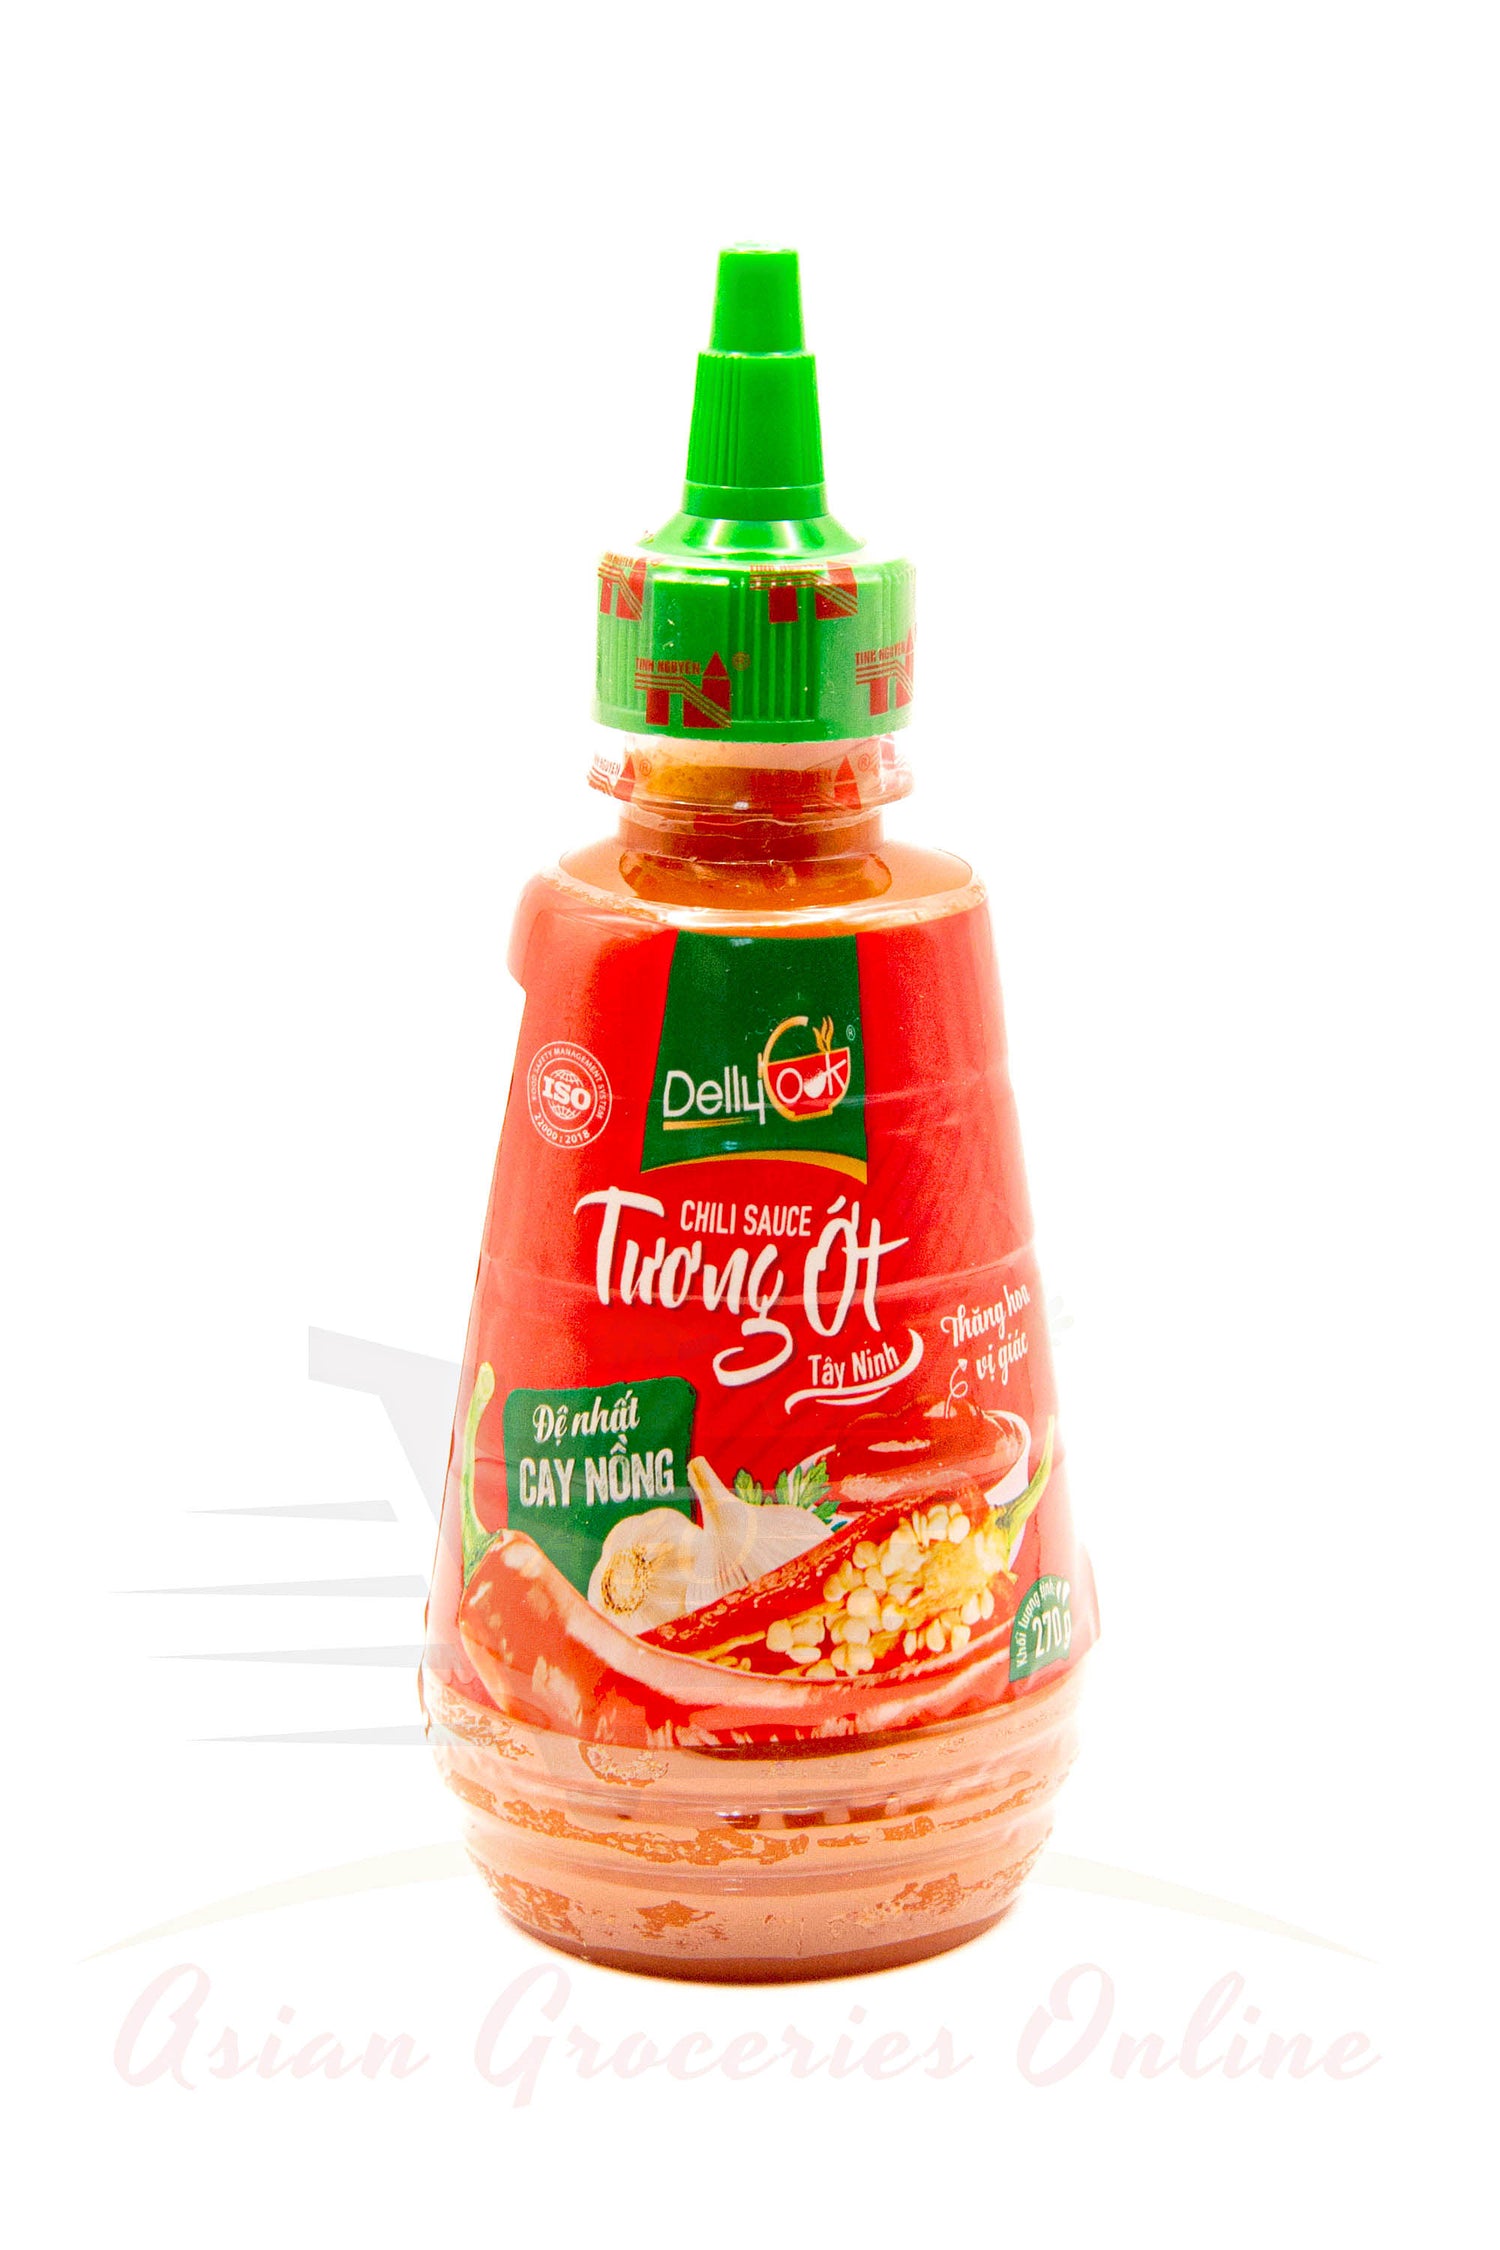 Tinh Nguyen Chili Sauce 270g *Buy 1 get 1 free*